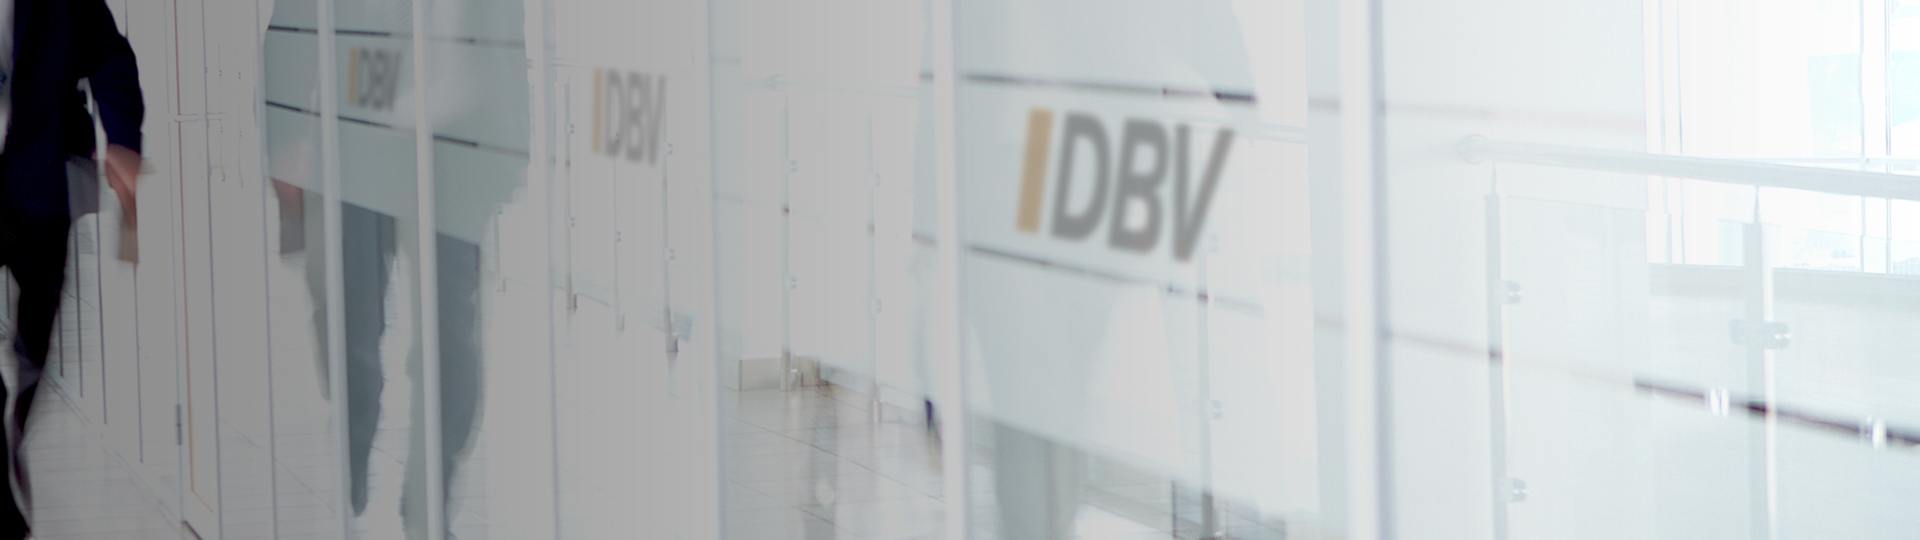 DBV Frankfurt am Main Stein oHG Inh. Florian Link Dominic Friebe | Private Krankenversicherung